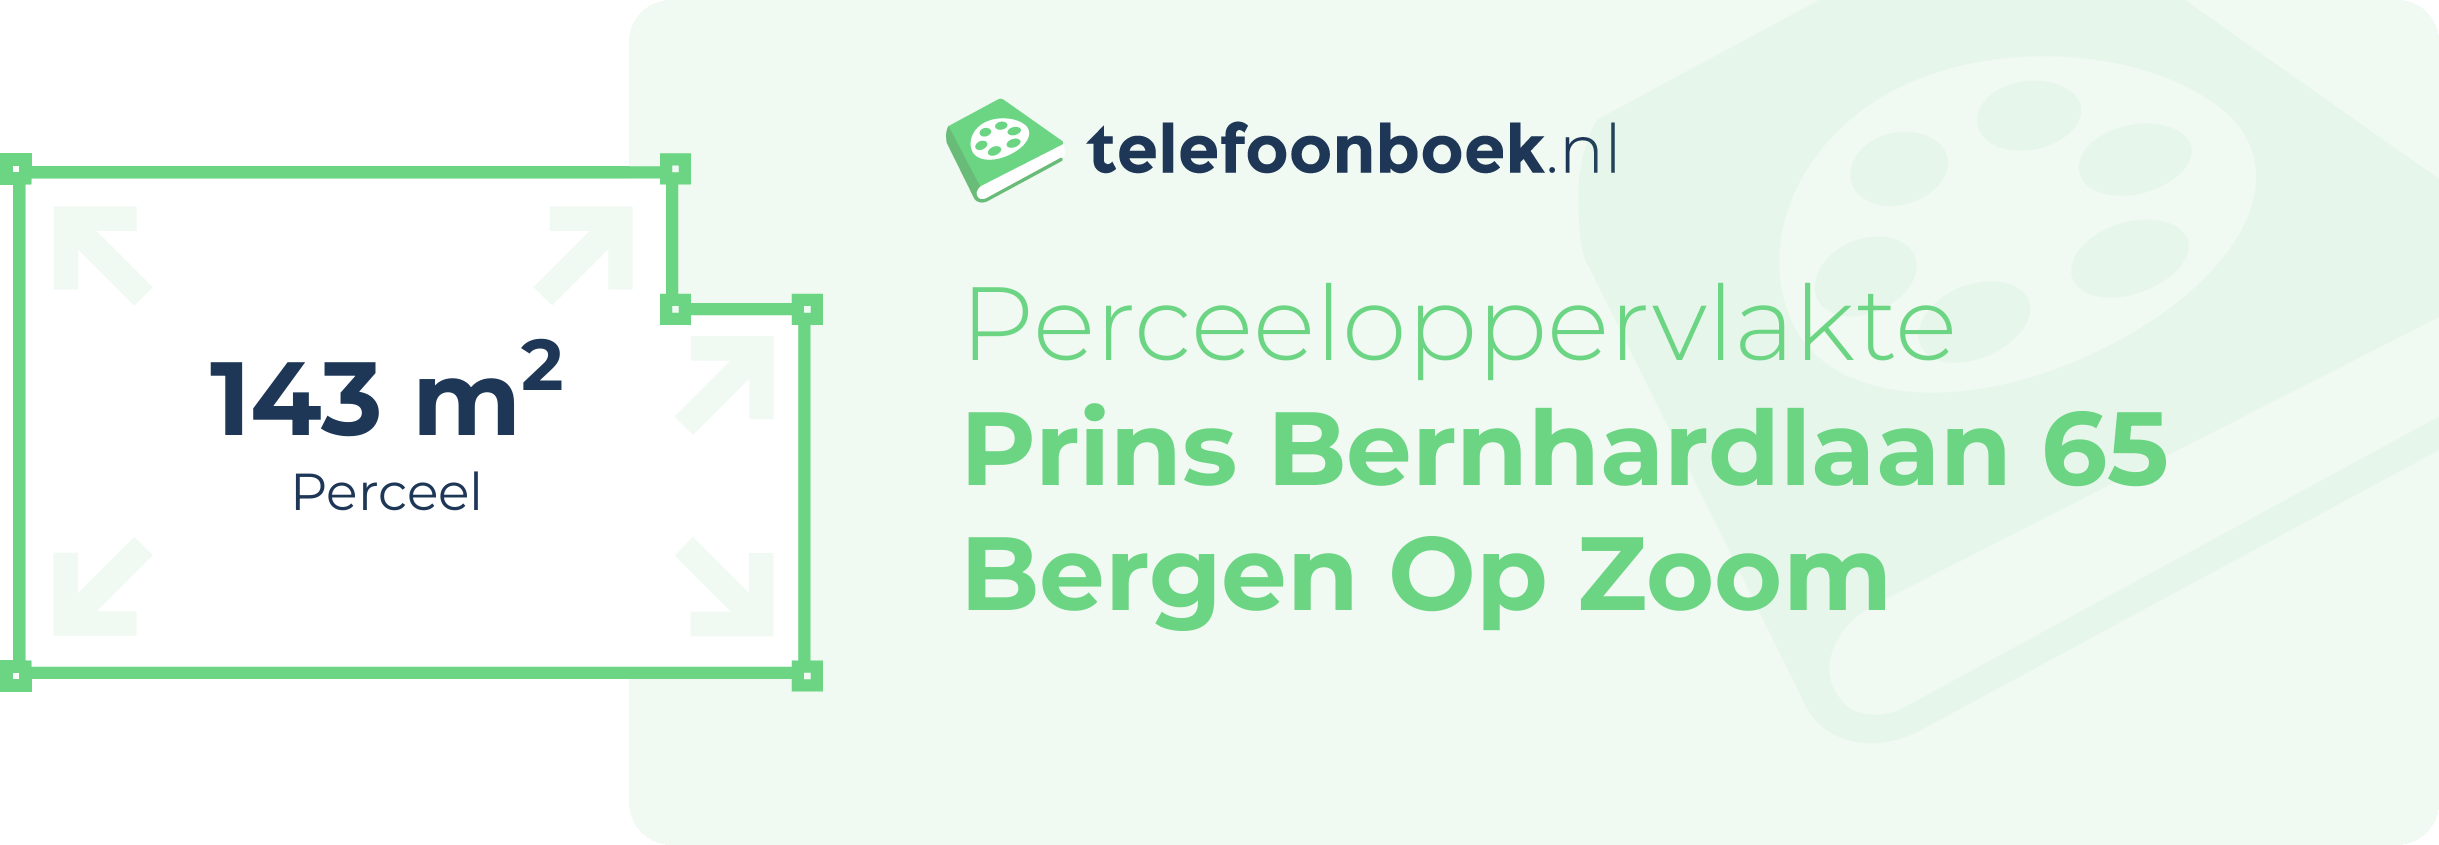 Perceeloppervlakte Prins Bernhardlaan 65 Bergen Op Zoom